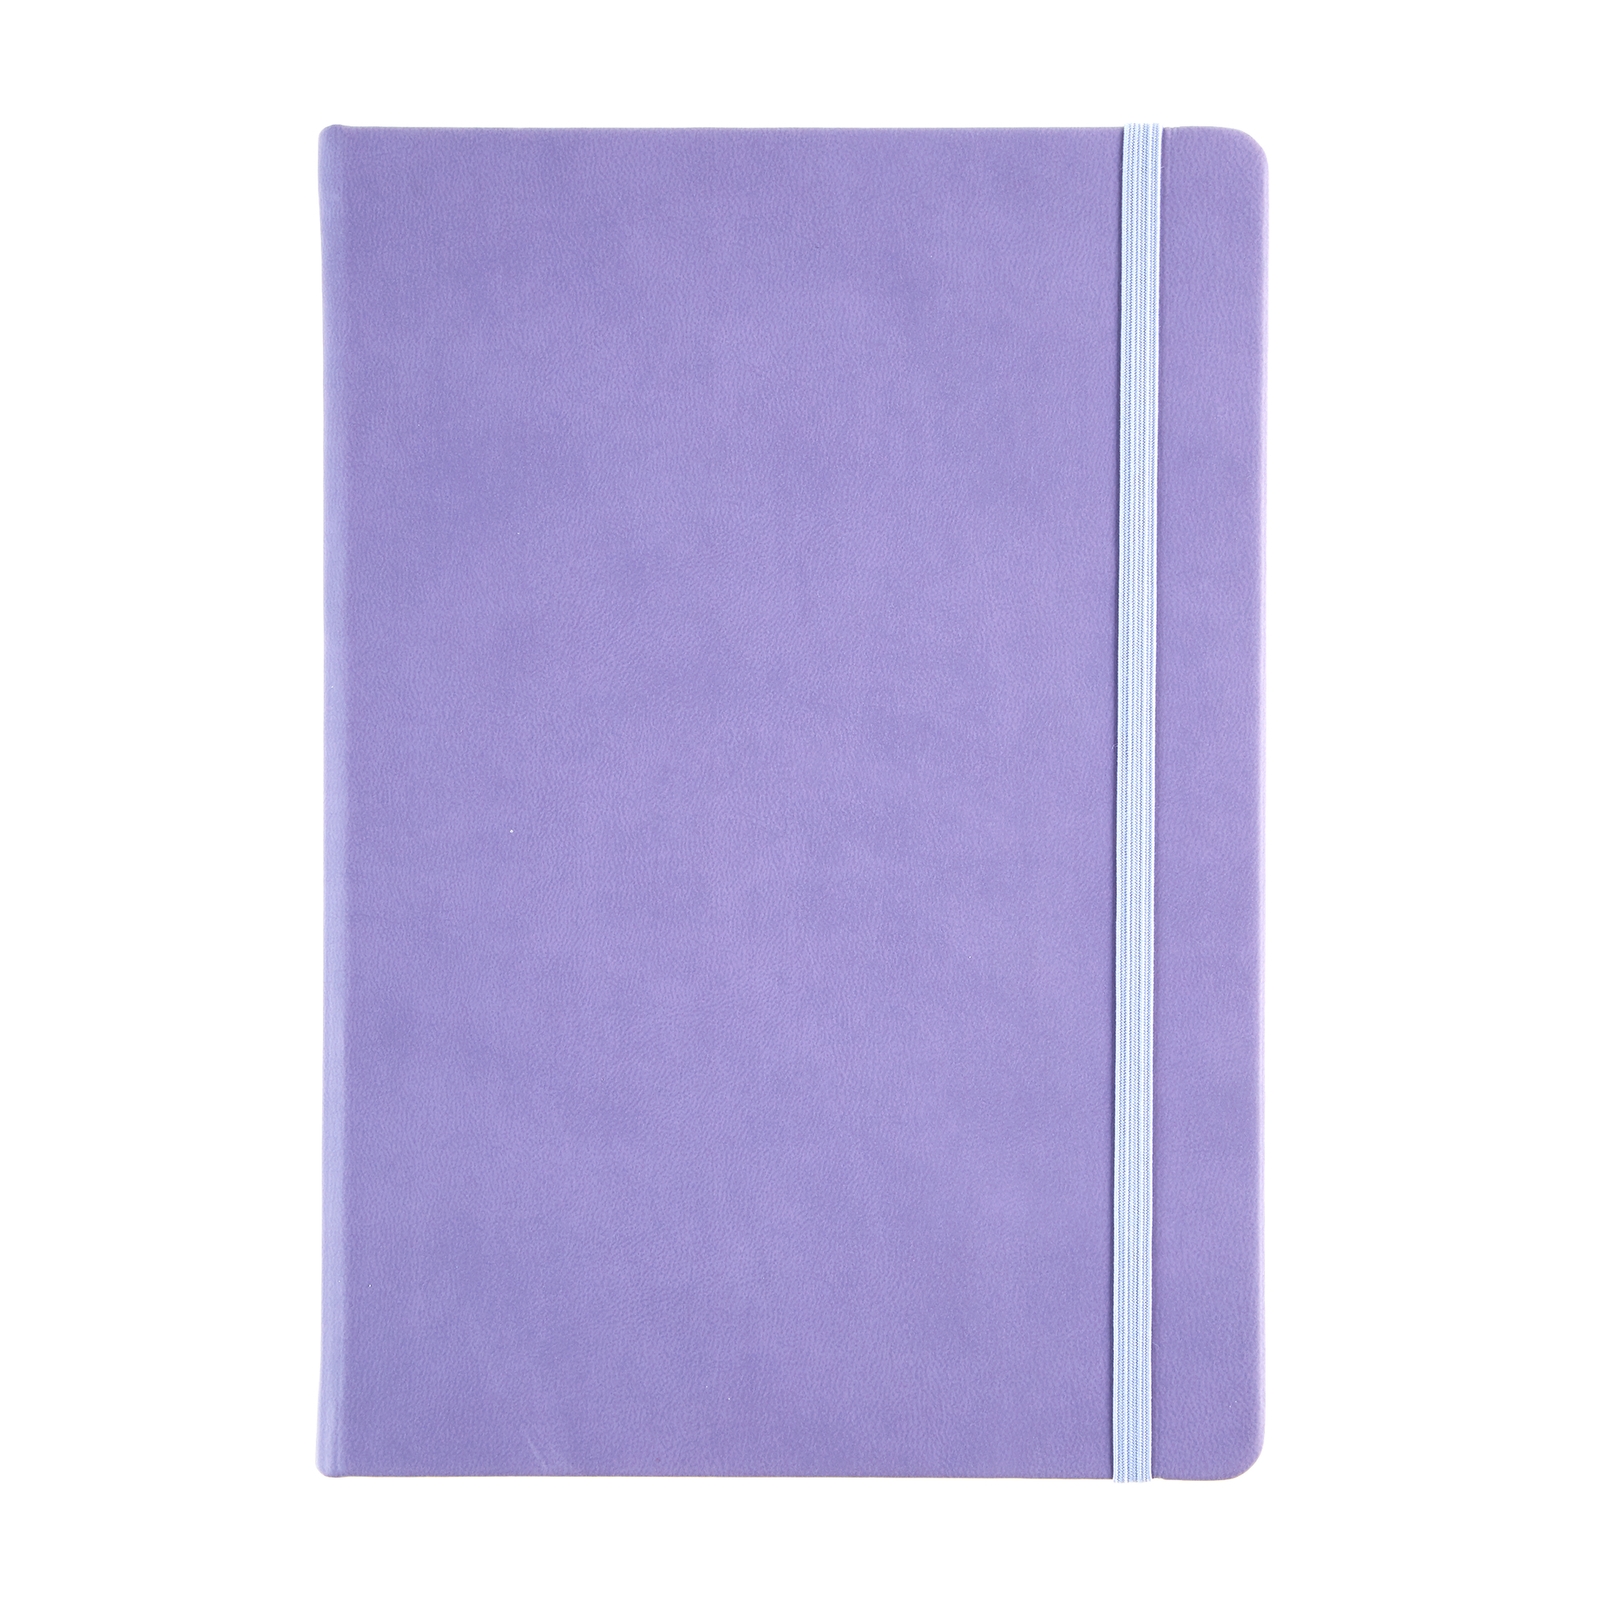 Collins A5 Hardback Notebook - Violet